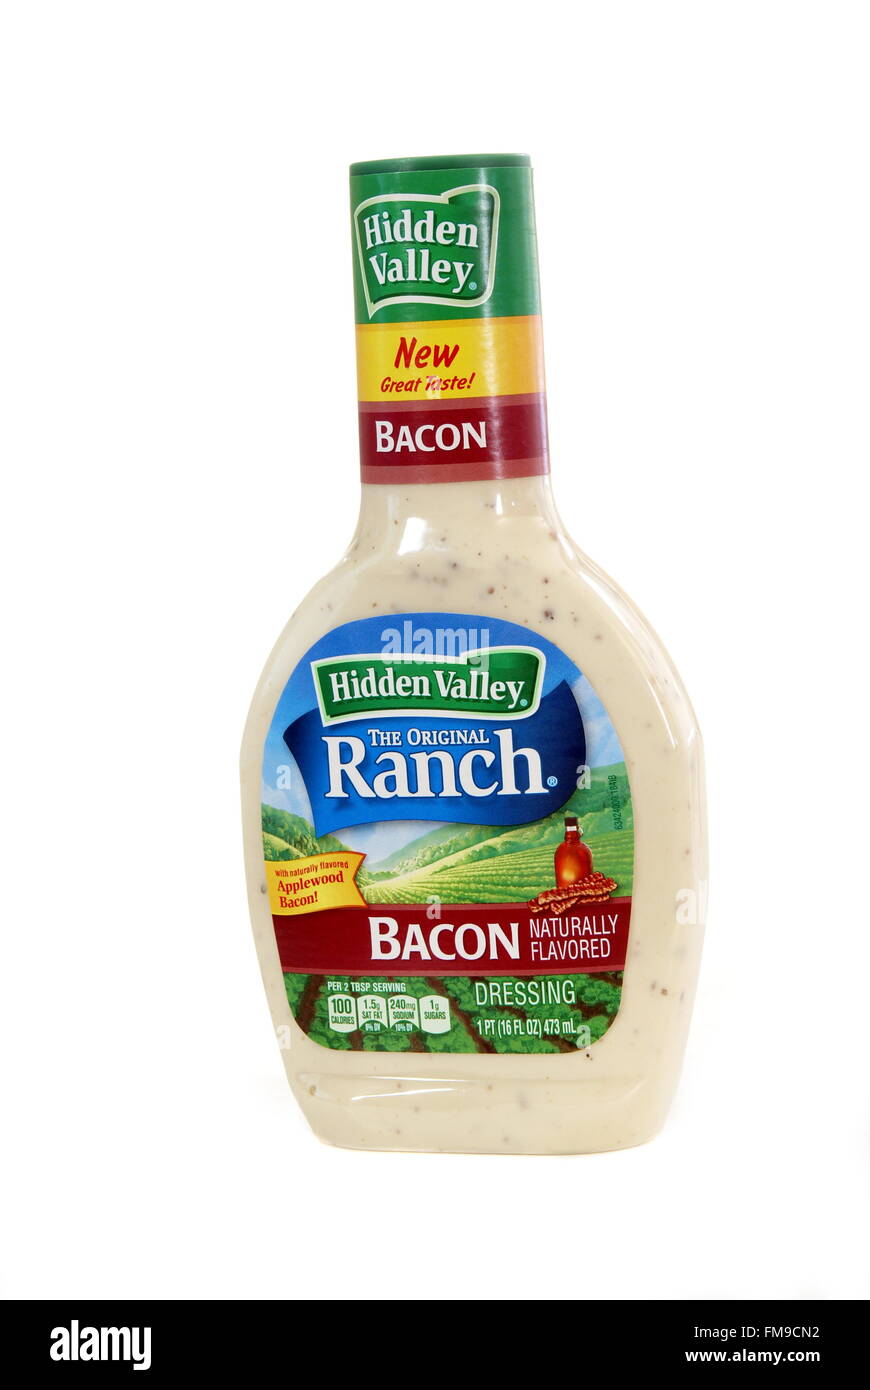 Botella de Hidden Valley Bacon Ranch Salad Dressing en blanco. 1 pt (16 fl oz) 473ml. La hv productos alimenticios co. oakland ca usa. Foto de stock